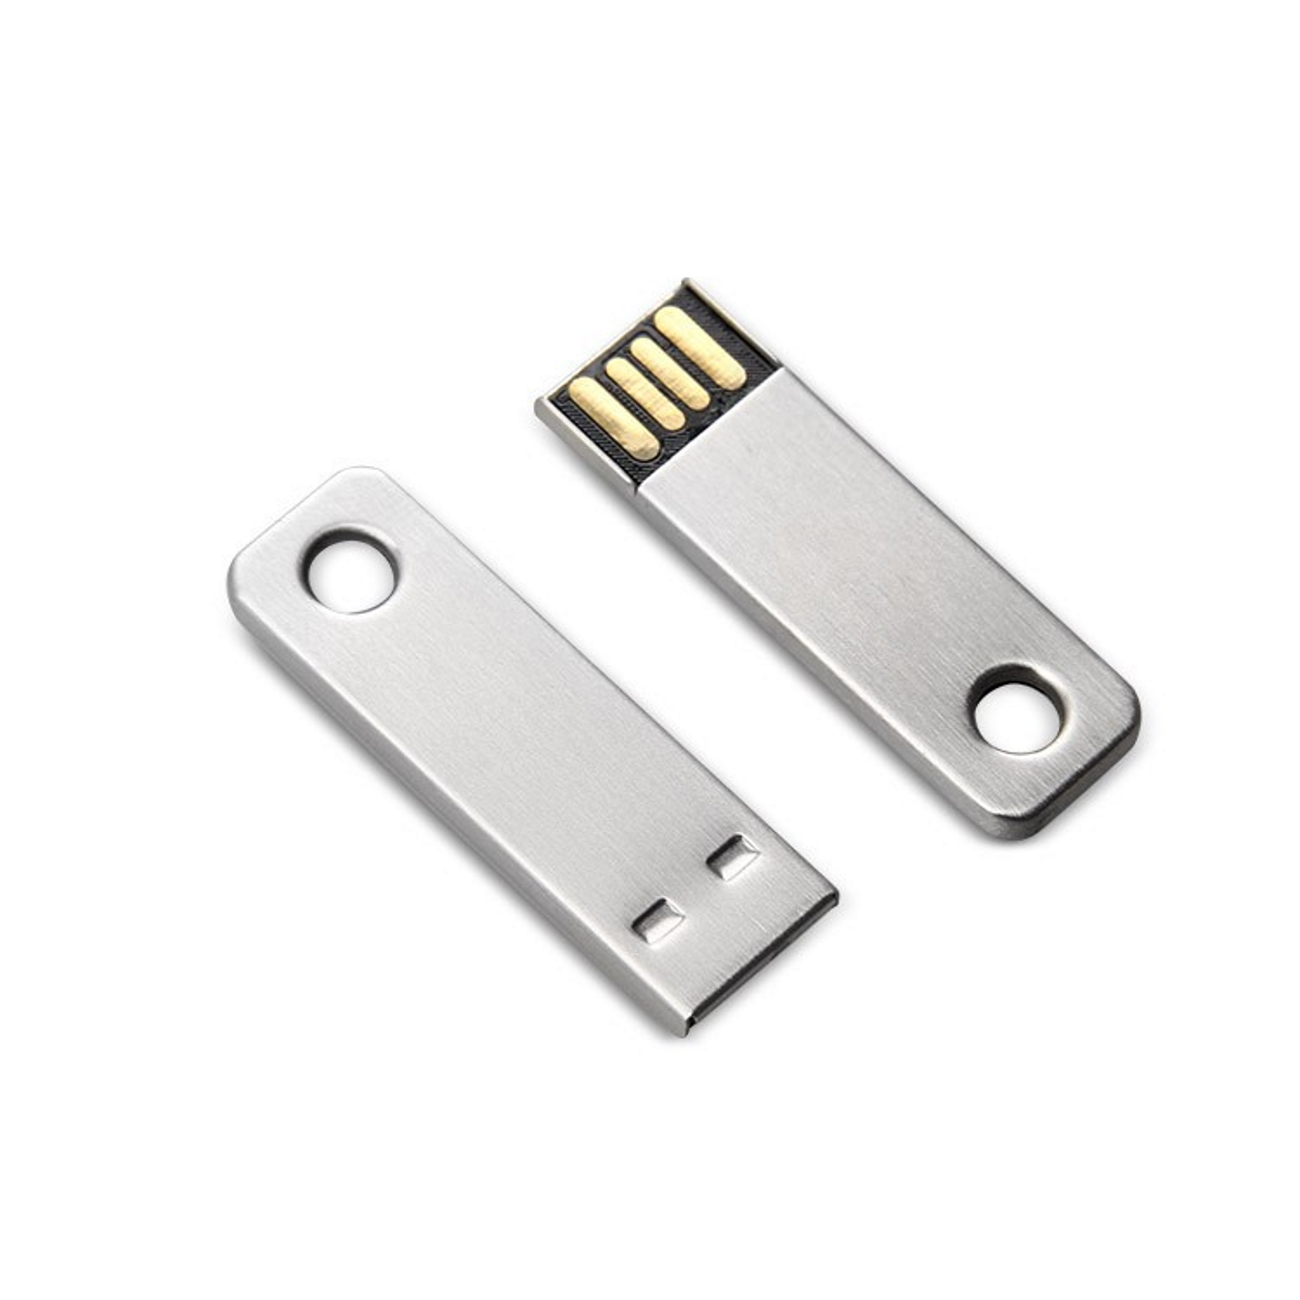 USB GERMANY ®Mini Key GB) 8 USB-Stick (Silber